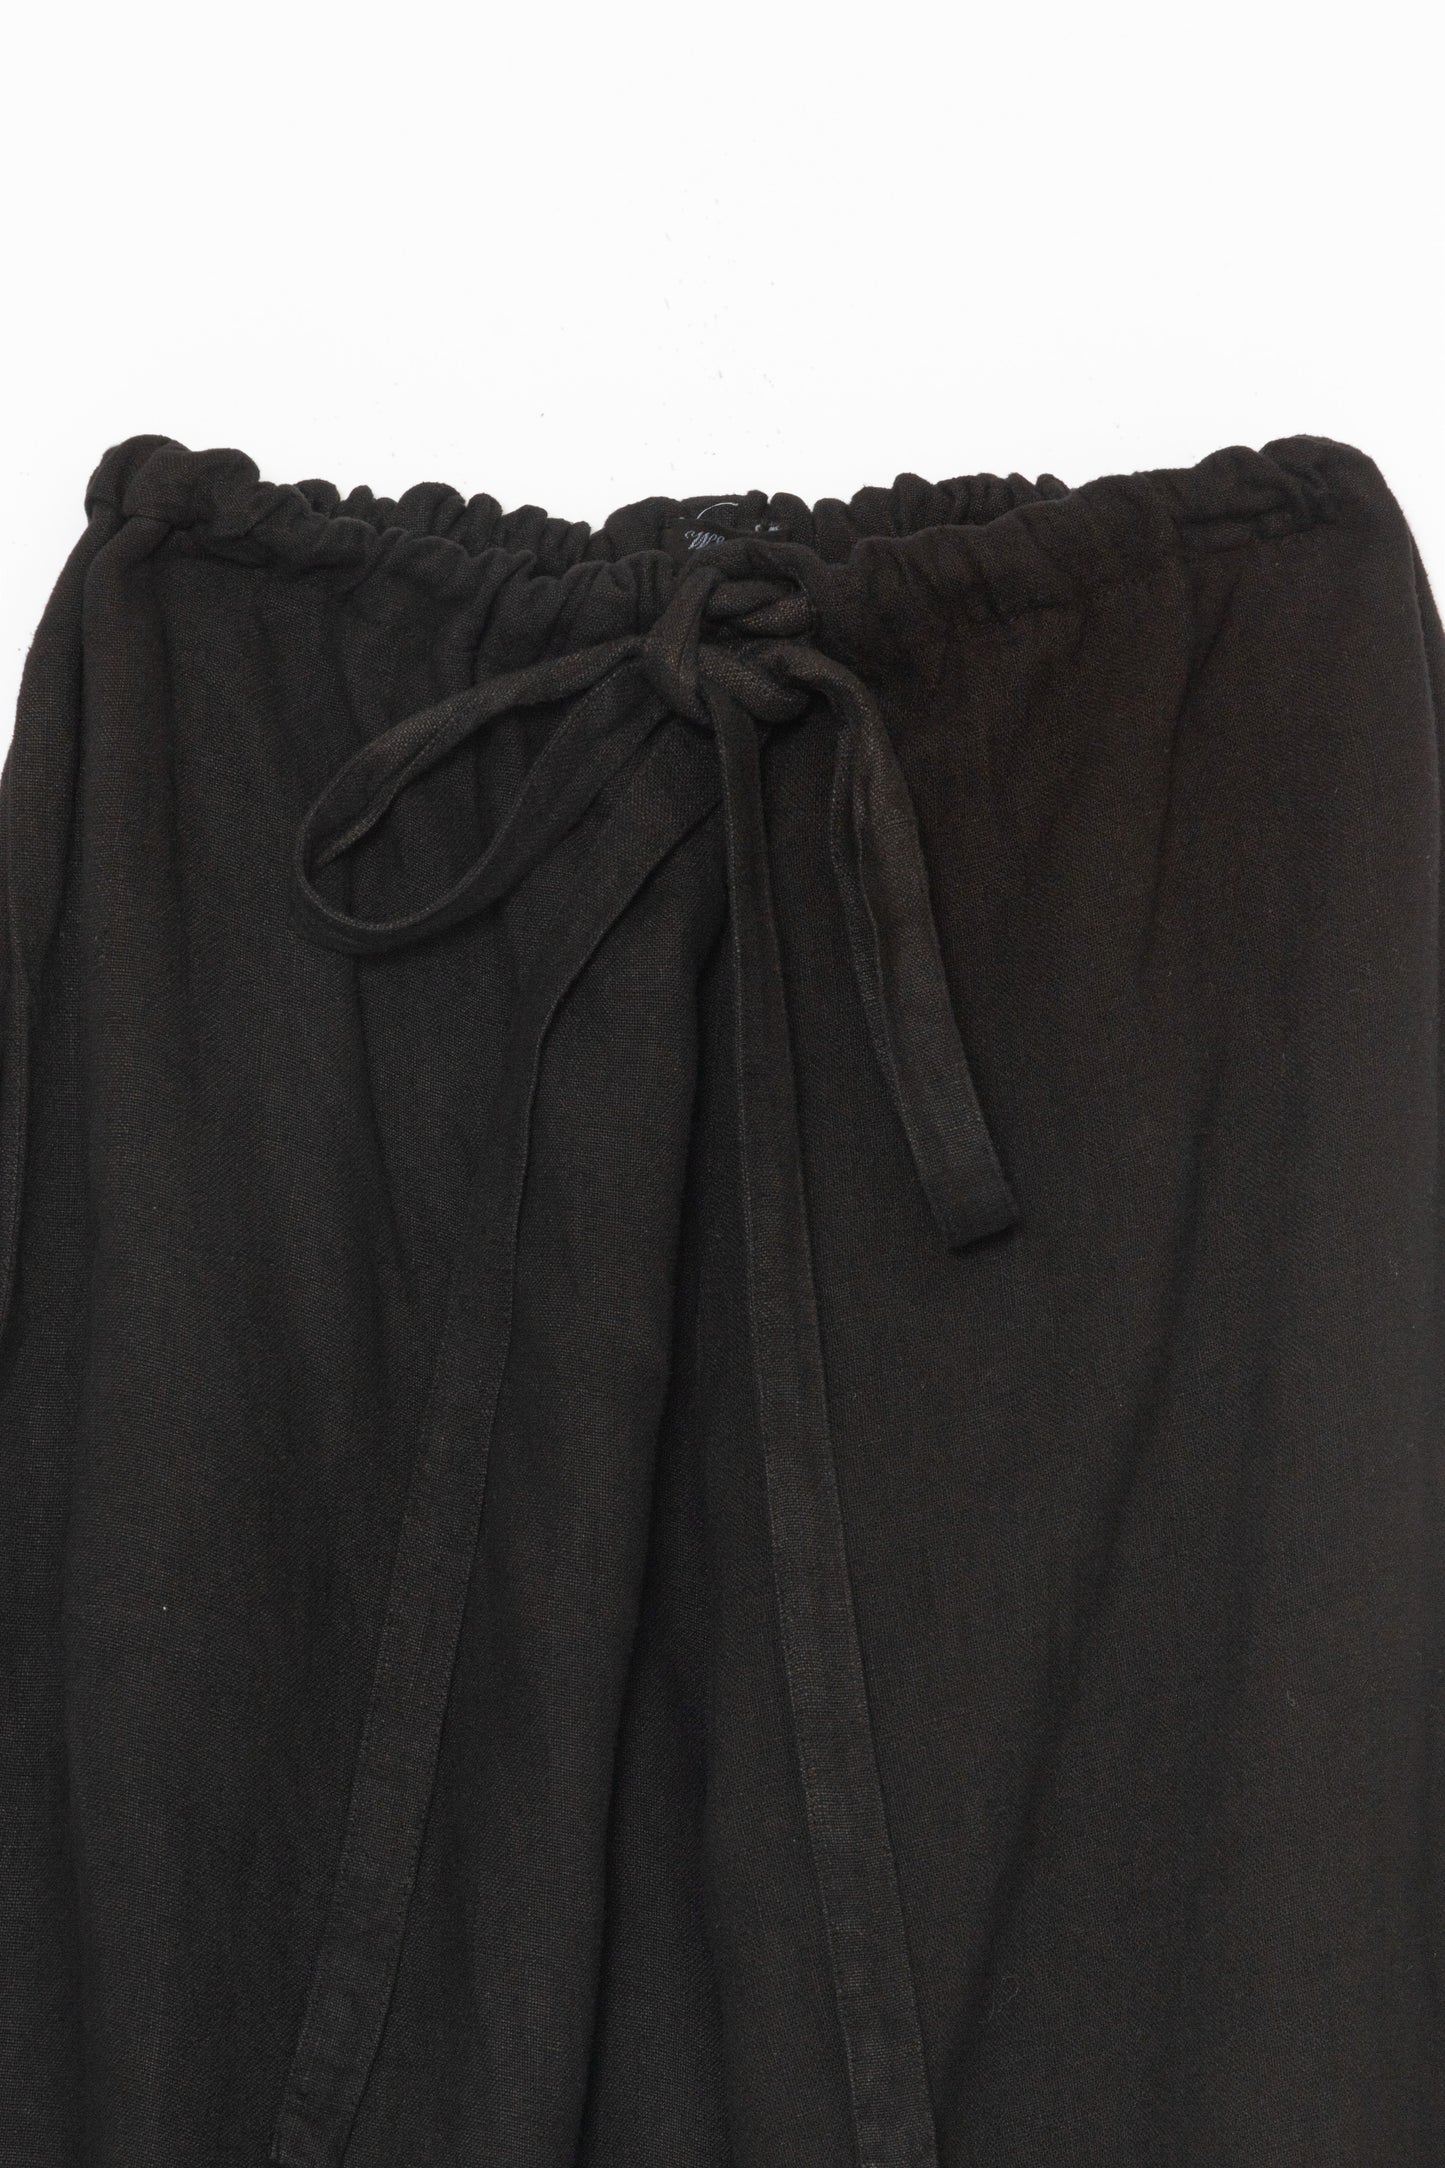 [Whiteread] Trousers 03 - Ebony Linen